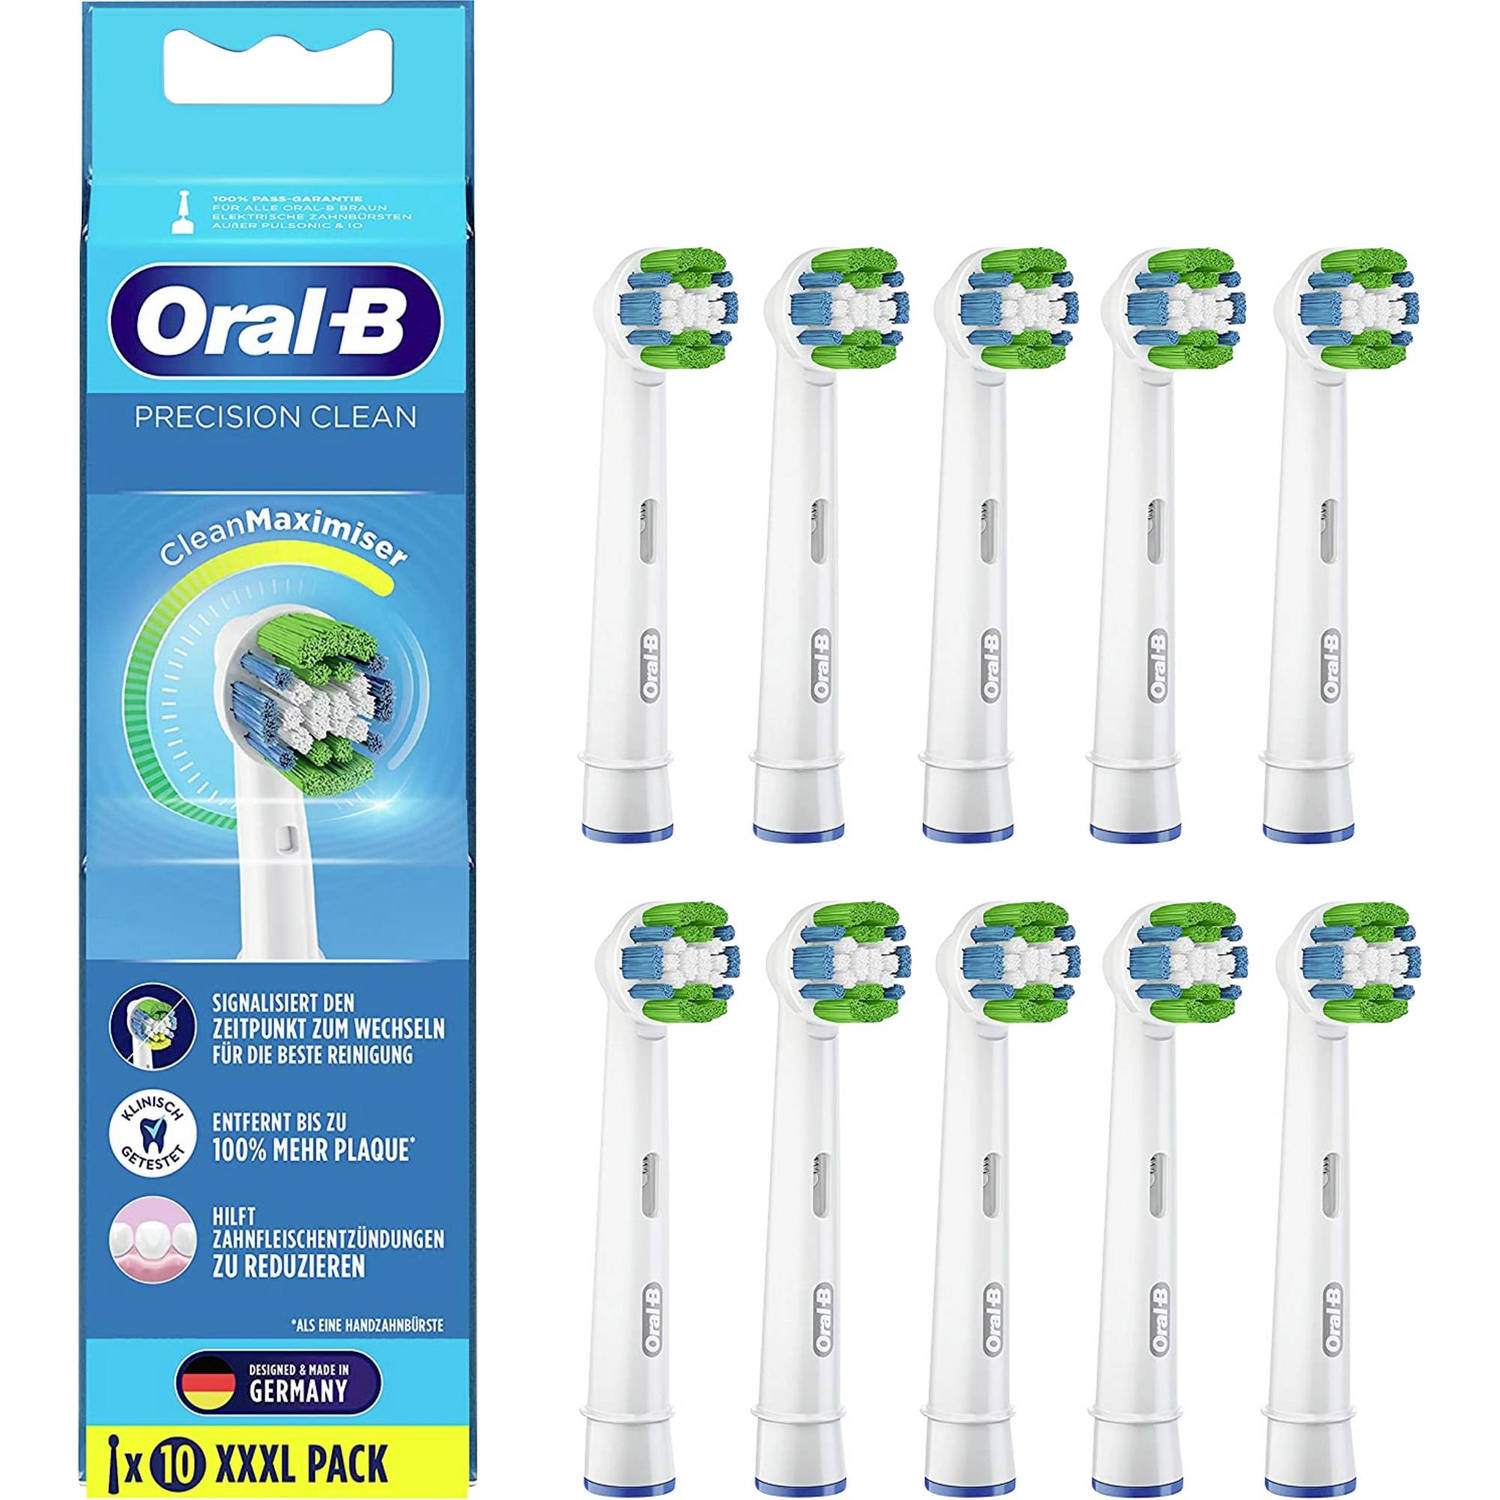 Tussendoortje Verkeersopstopping Discrepantie Oral-B Opzetborstels Precision Clean CleanMaximiser - 10 Stuks | Blokker